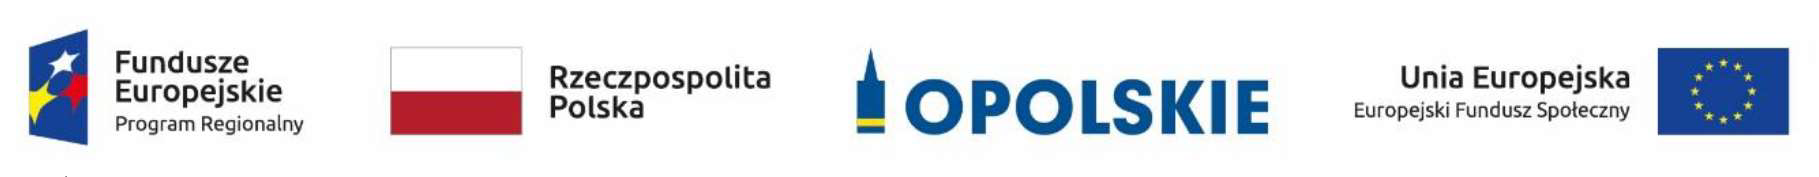 Znak Funduszy Europejskich, barwy RP, znak Unii Europejskiej, oficjalne logo promocyjne  Województwa Opolskiego Opolskie